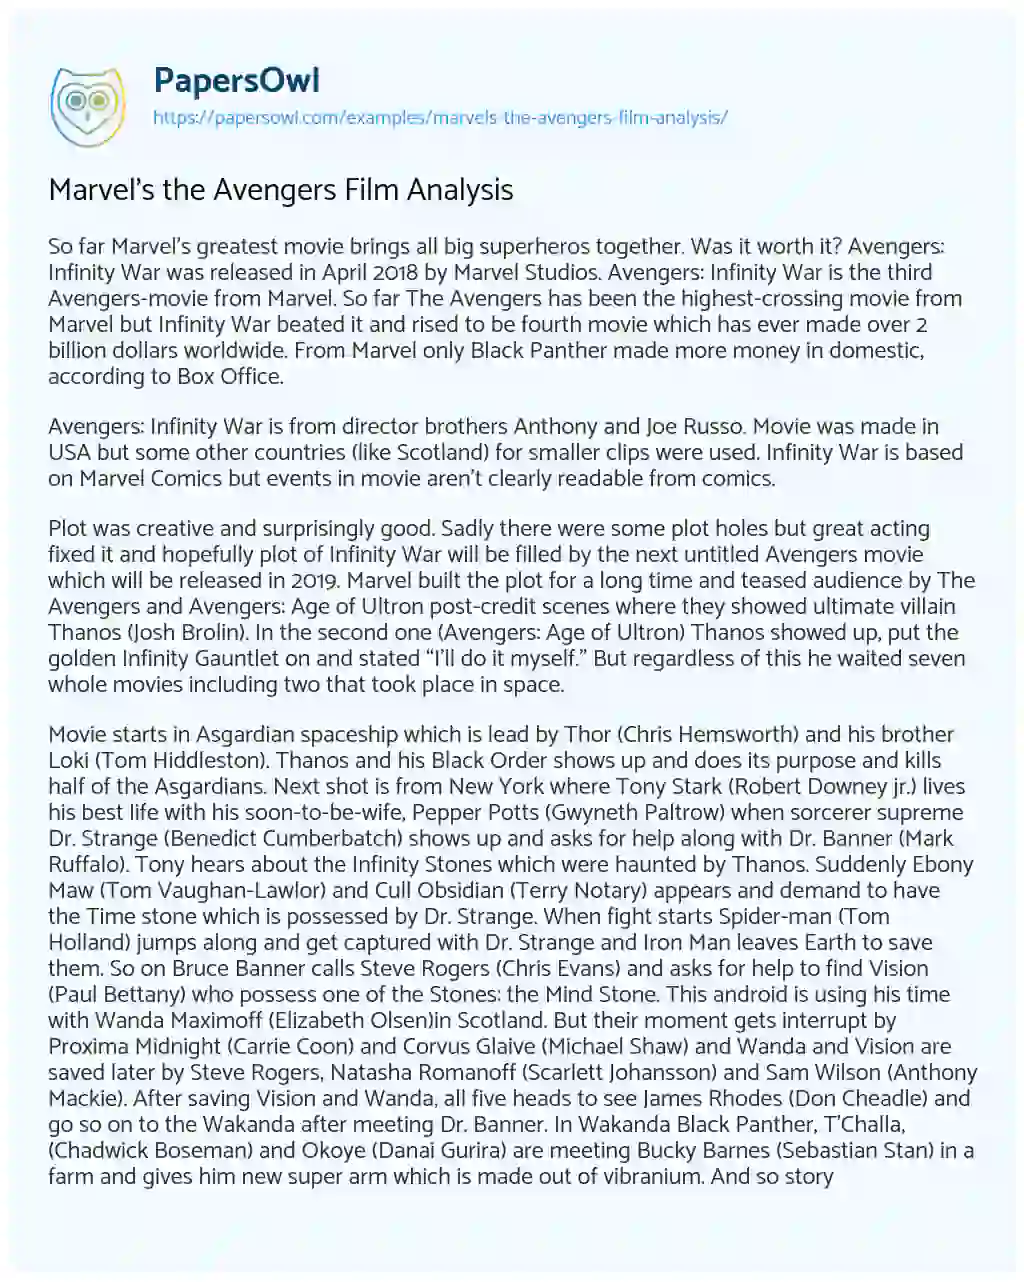 Marvel’s the Avengers Film Analysis essay